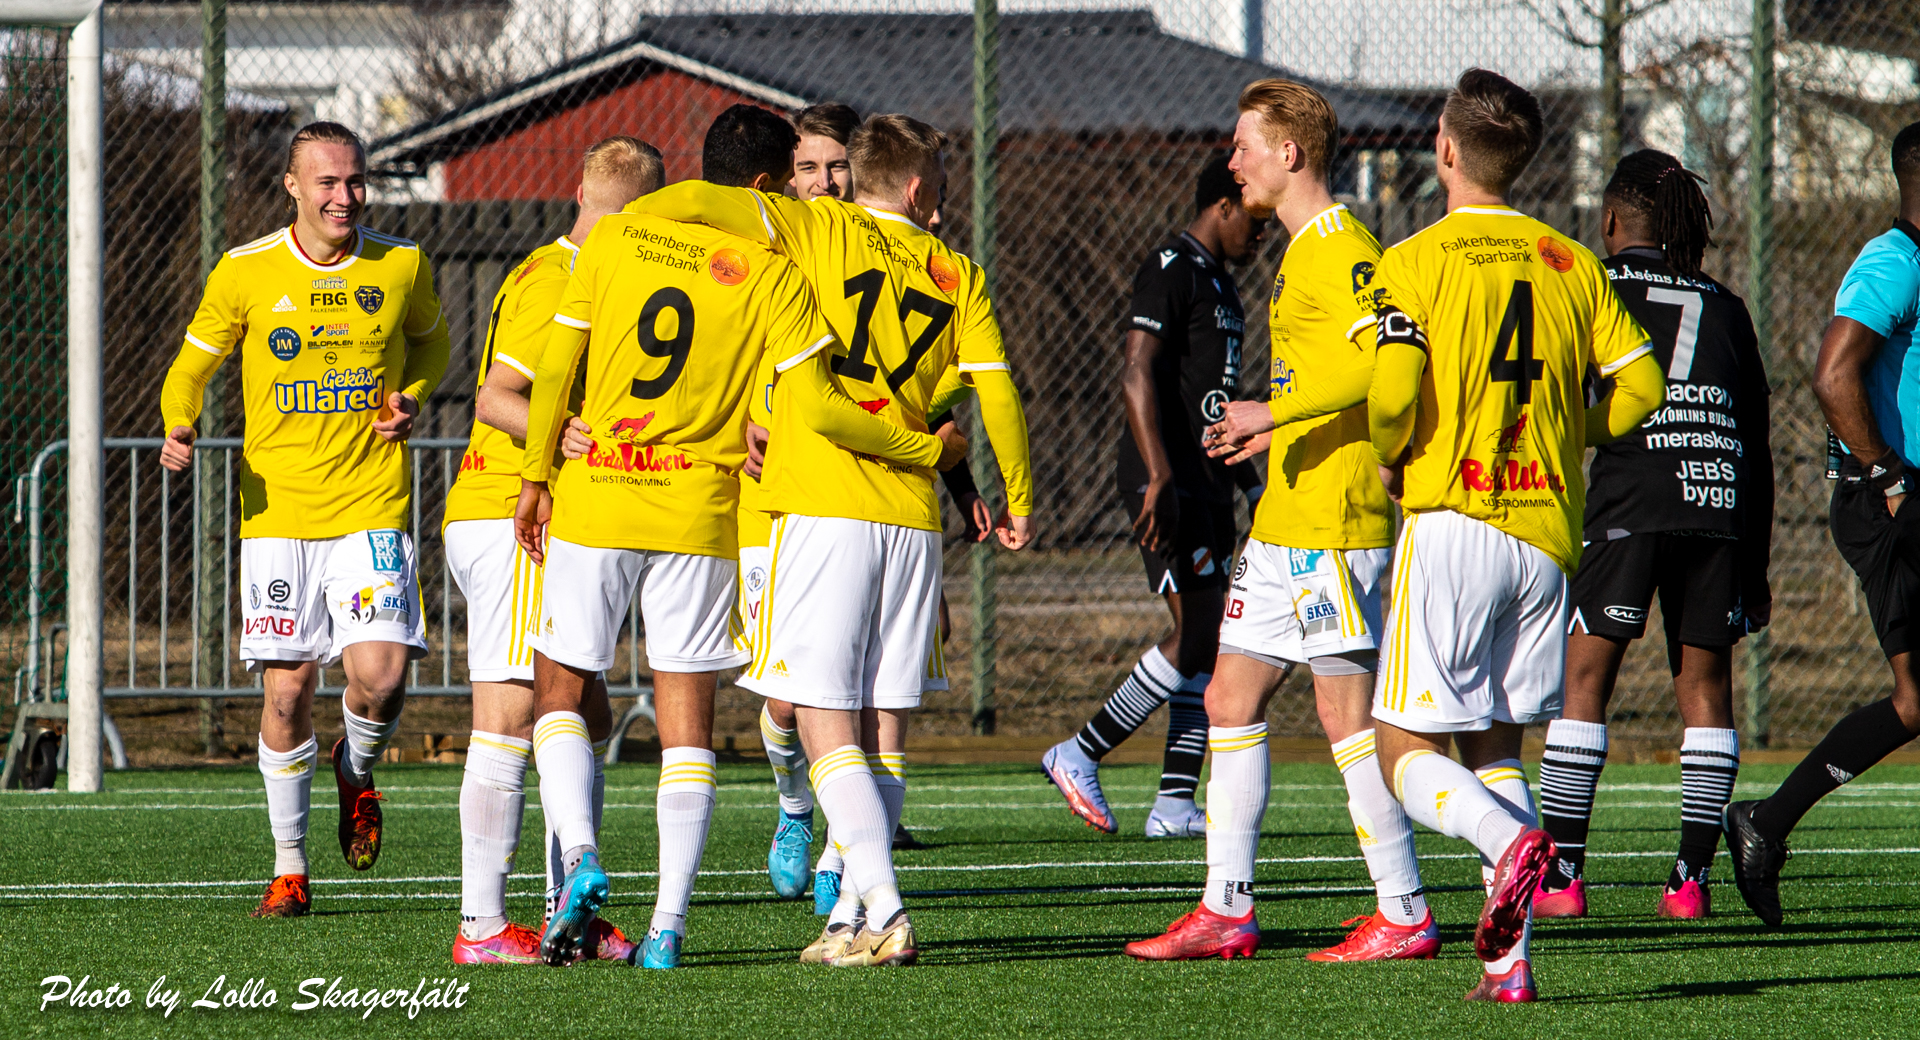 2-0-seger mot Ytterhogdal trots utvisning: ”Glad över att killarna höll moralen uppe”